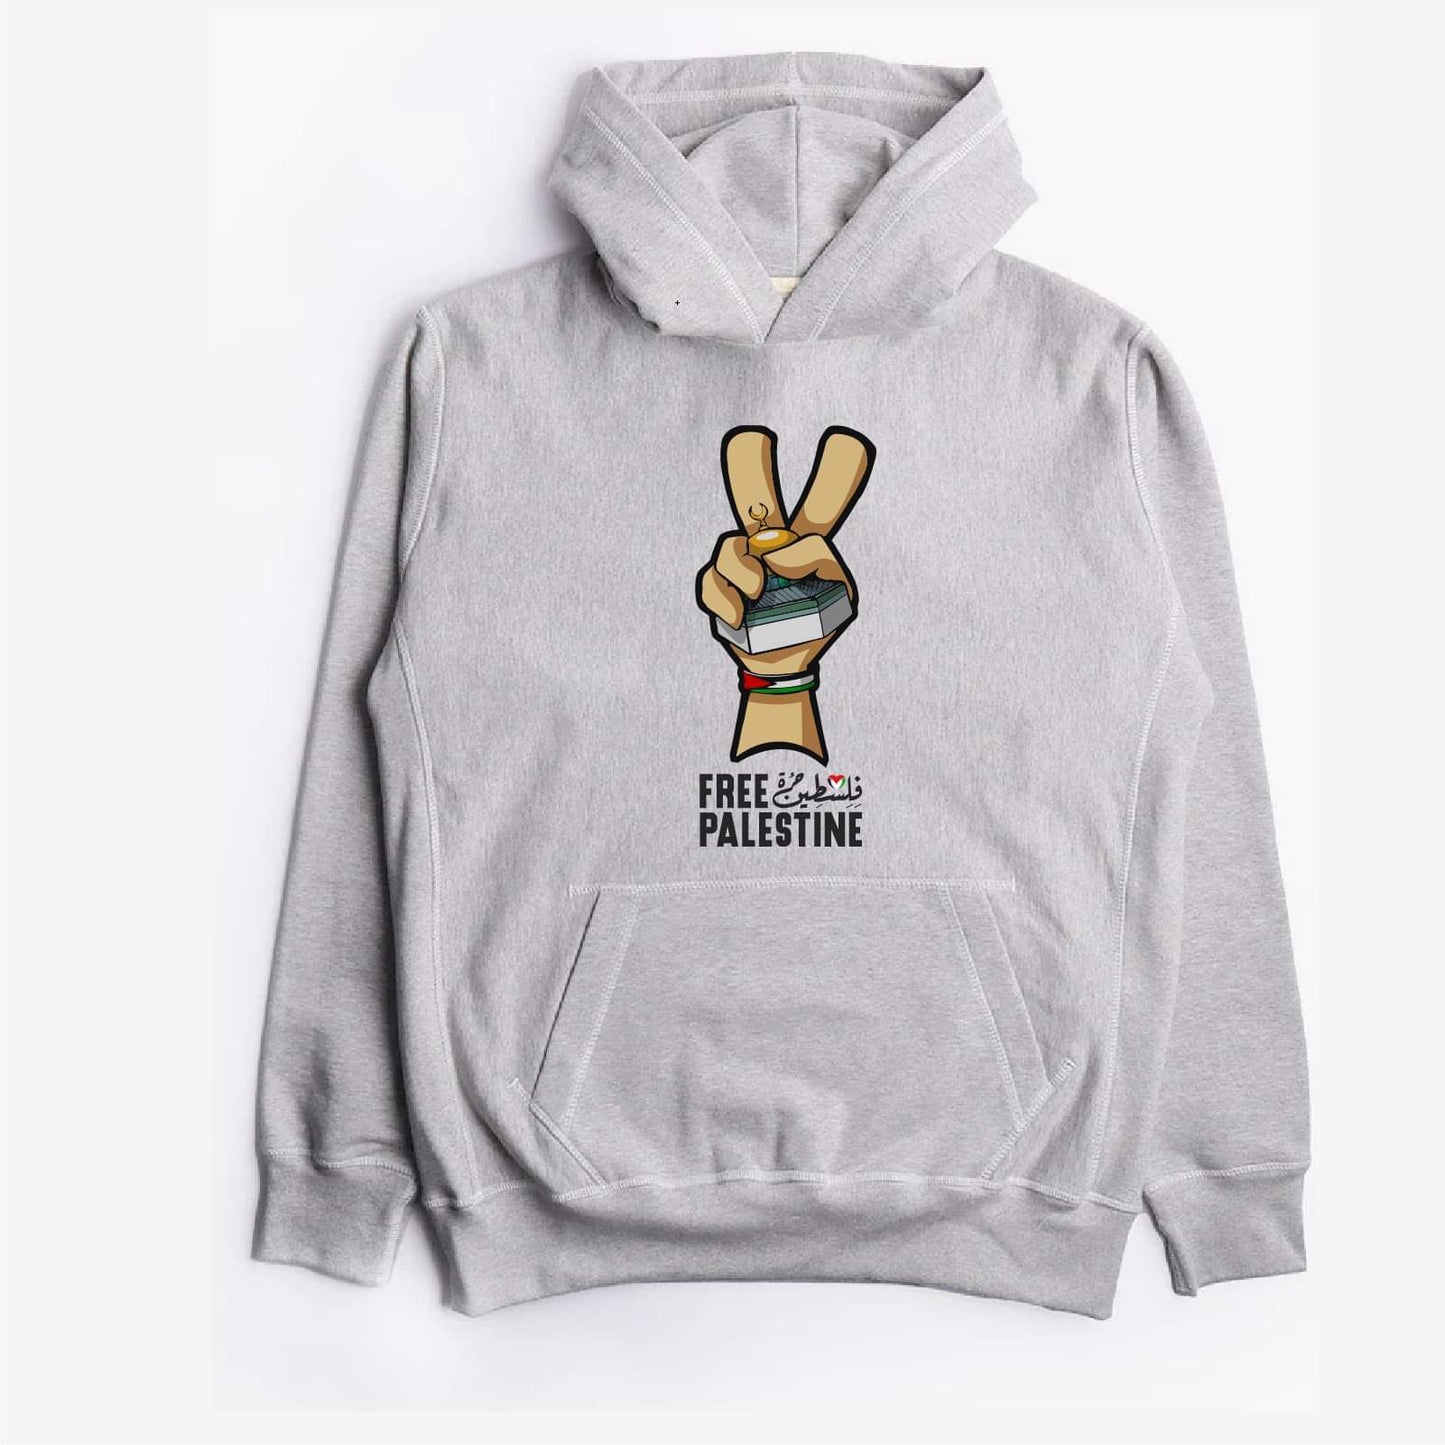 Palestine peace hoodie